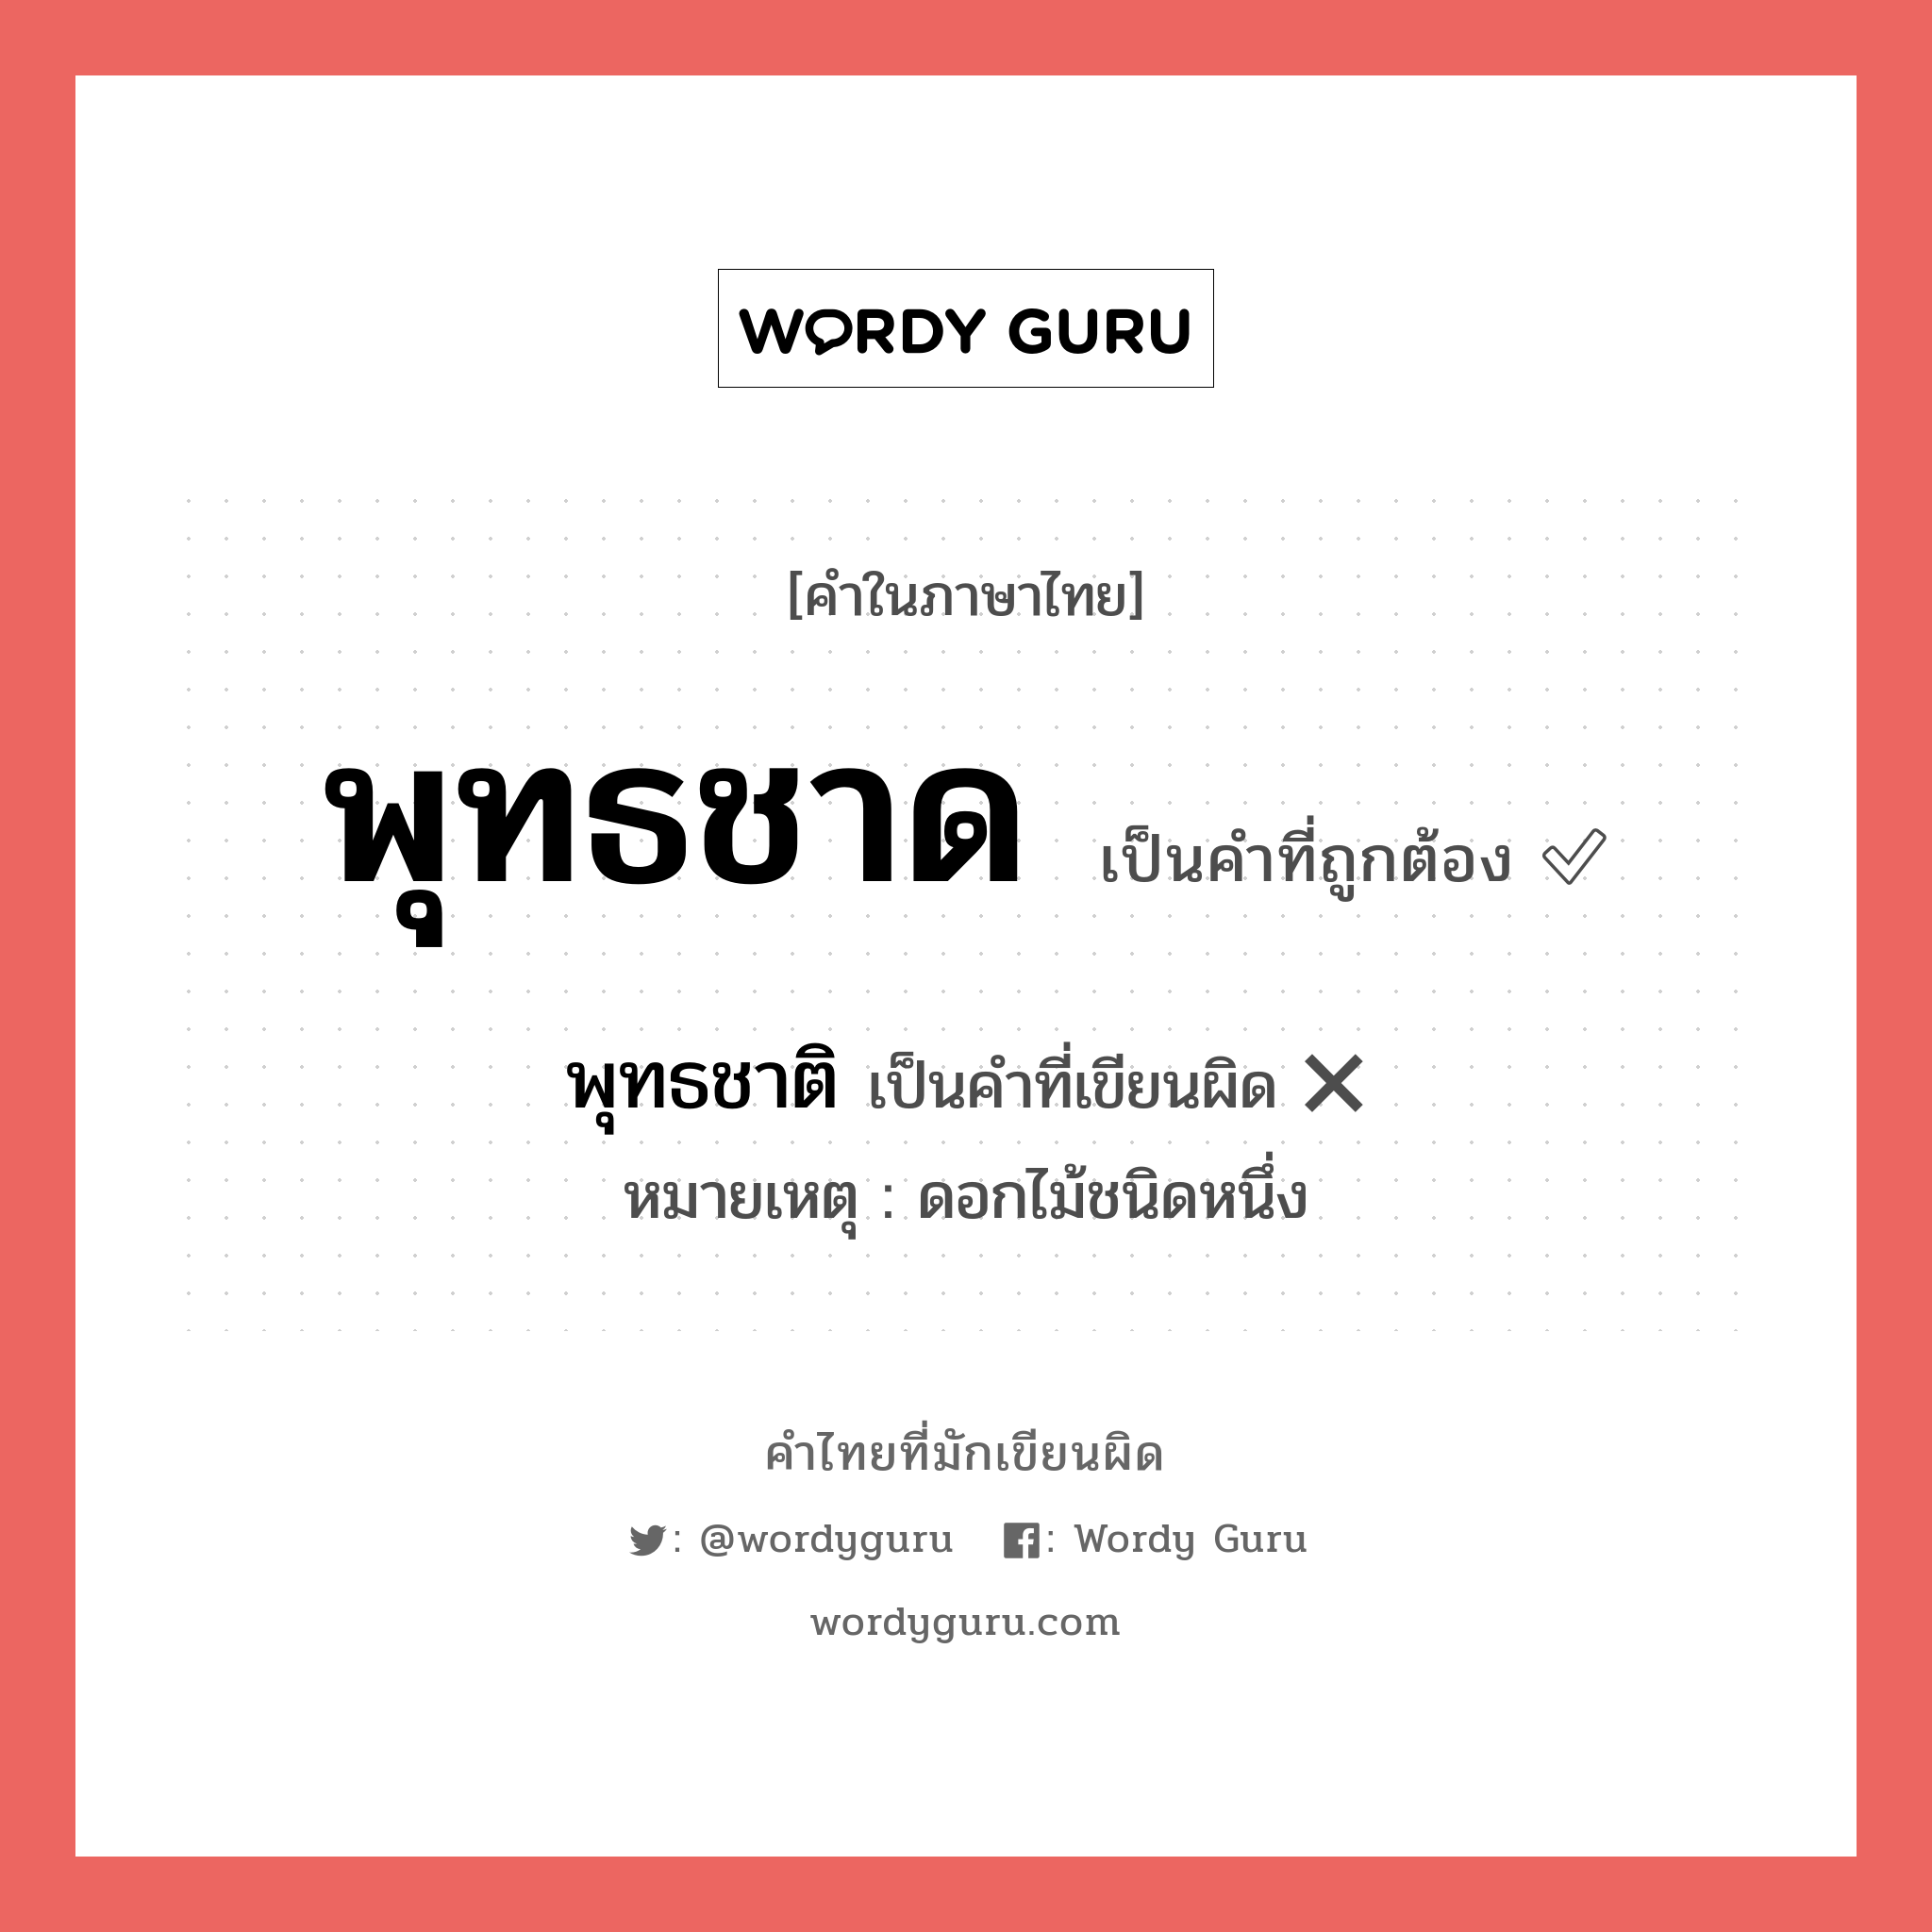 พุทธชาติ หรือ พุทธชาด คำไหนเขียนถูก?, คำในภาษาไทยที่มักเขียนผิด พุทธชาติ คำที่ผิด ❌ พุทธชาด หมายเหตุ ดอกไม้ชนิดหนึ่ง